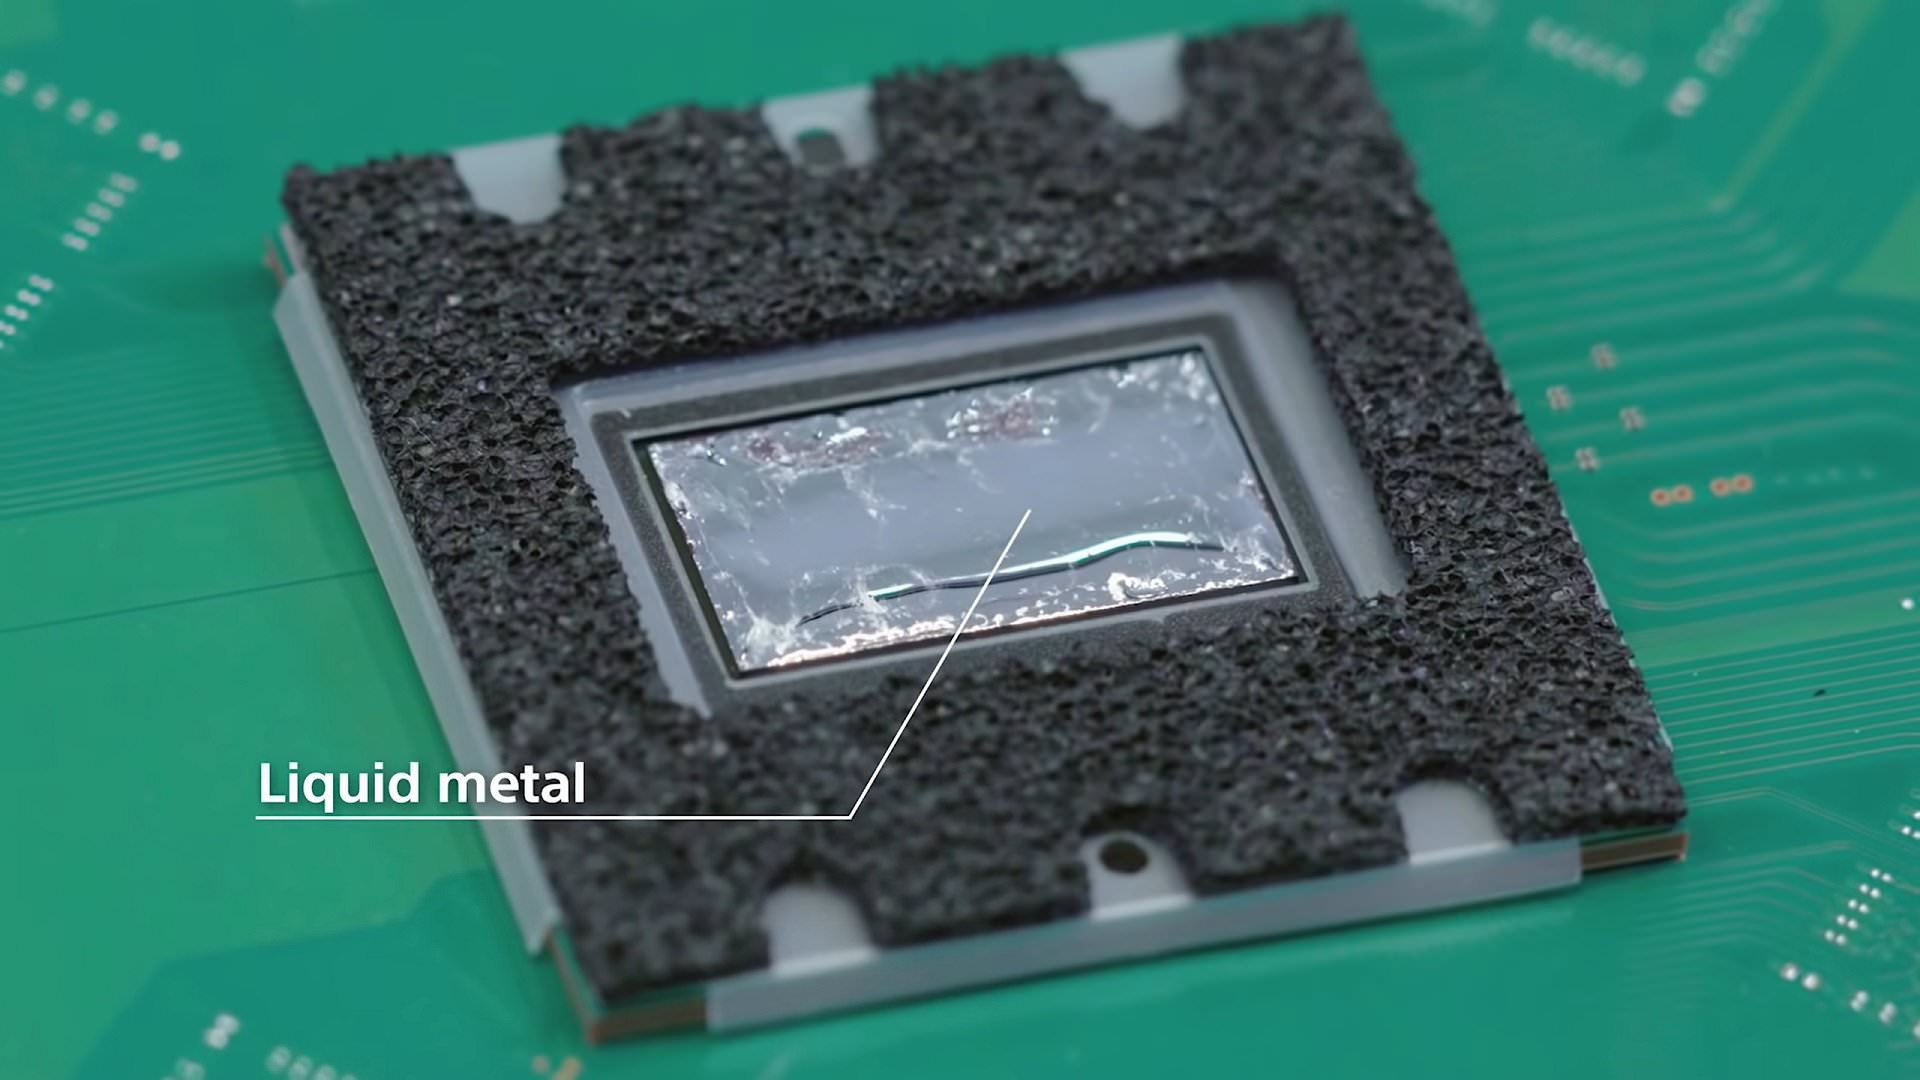 تراشه ای کامپیوتری با پوشش محافظ و ماده ای در سطح به نام Liquid metal